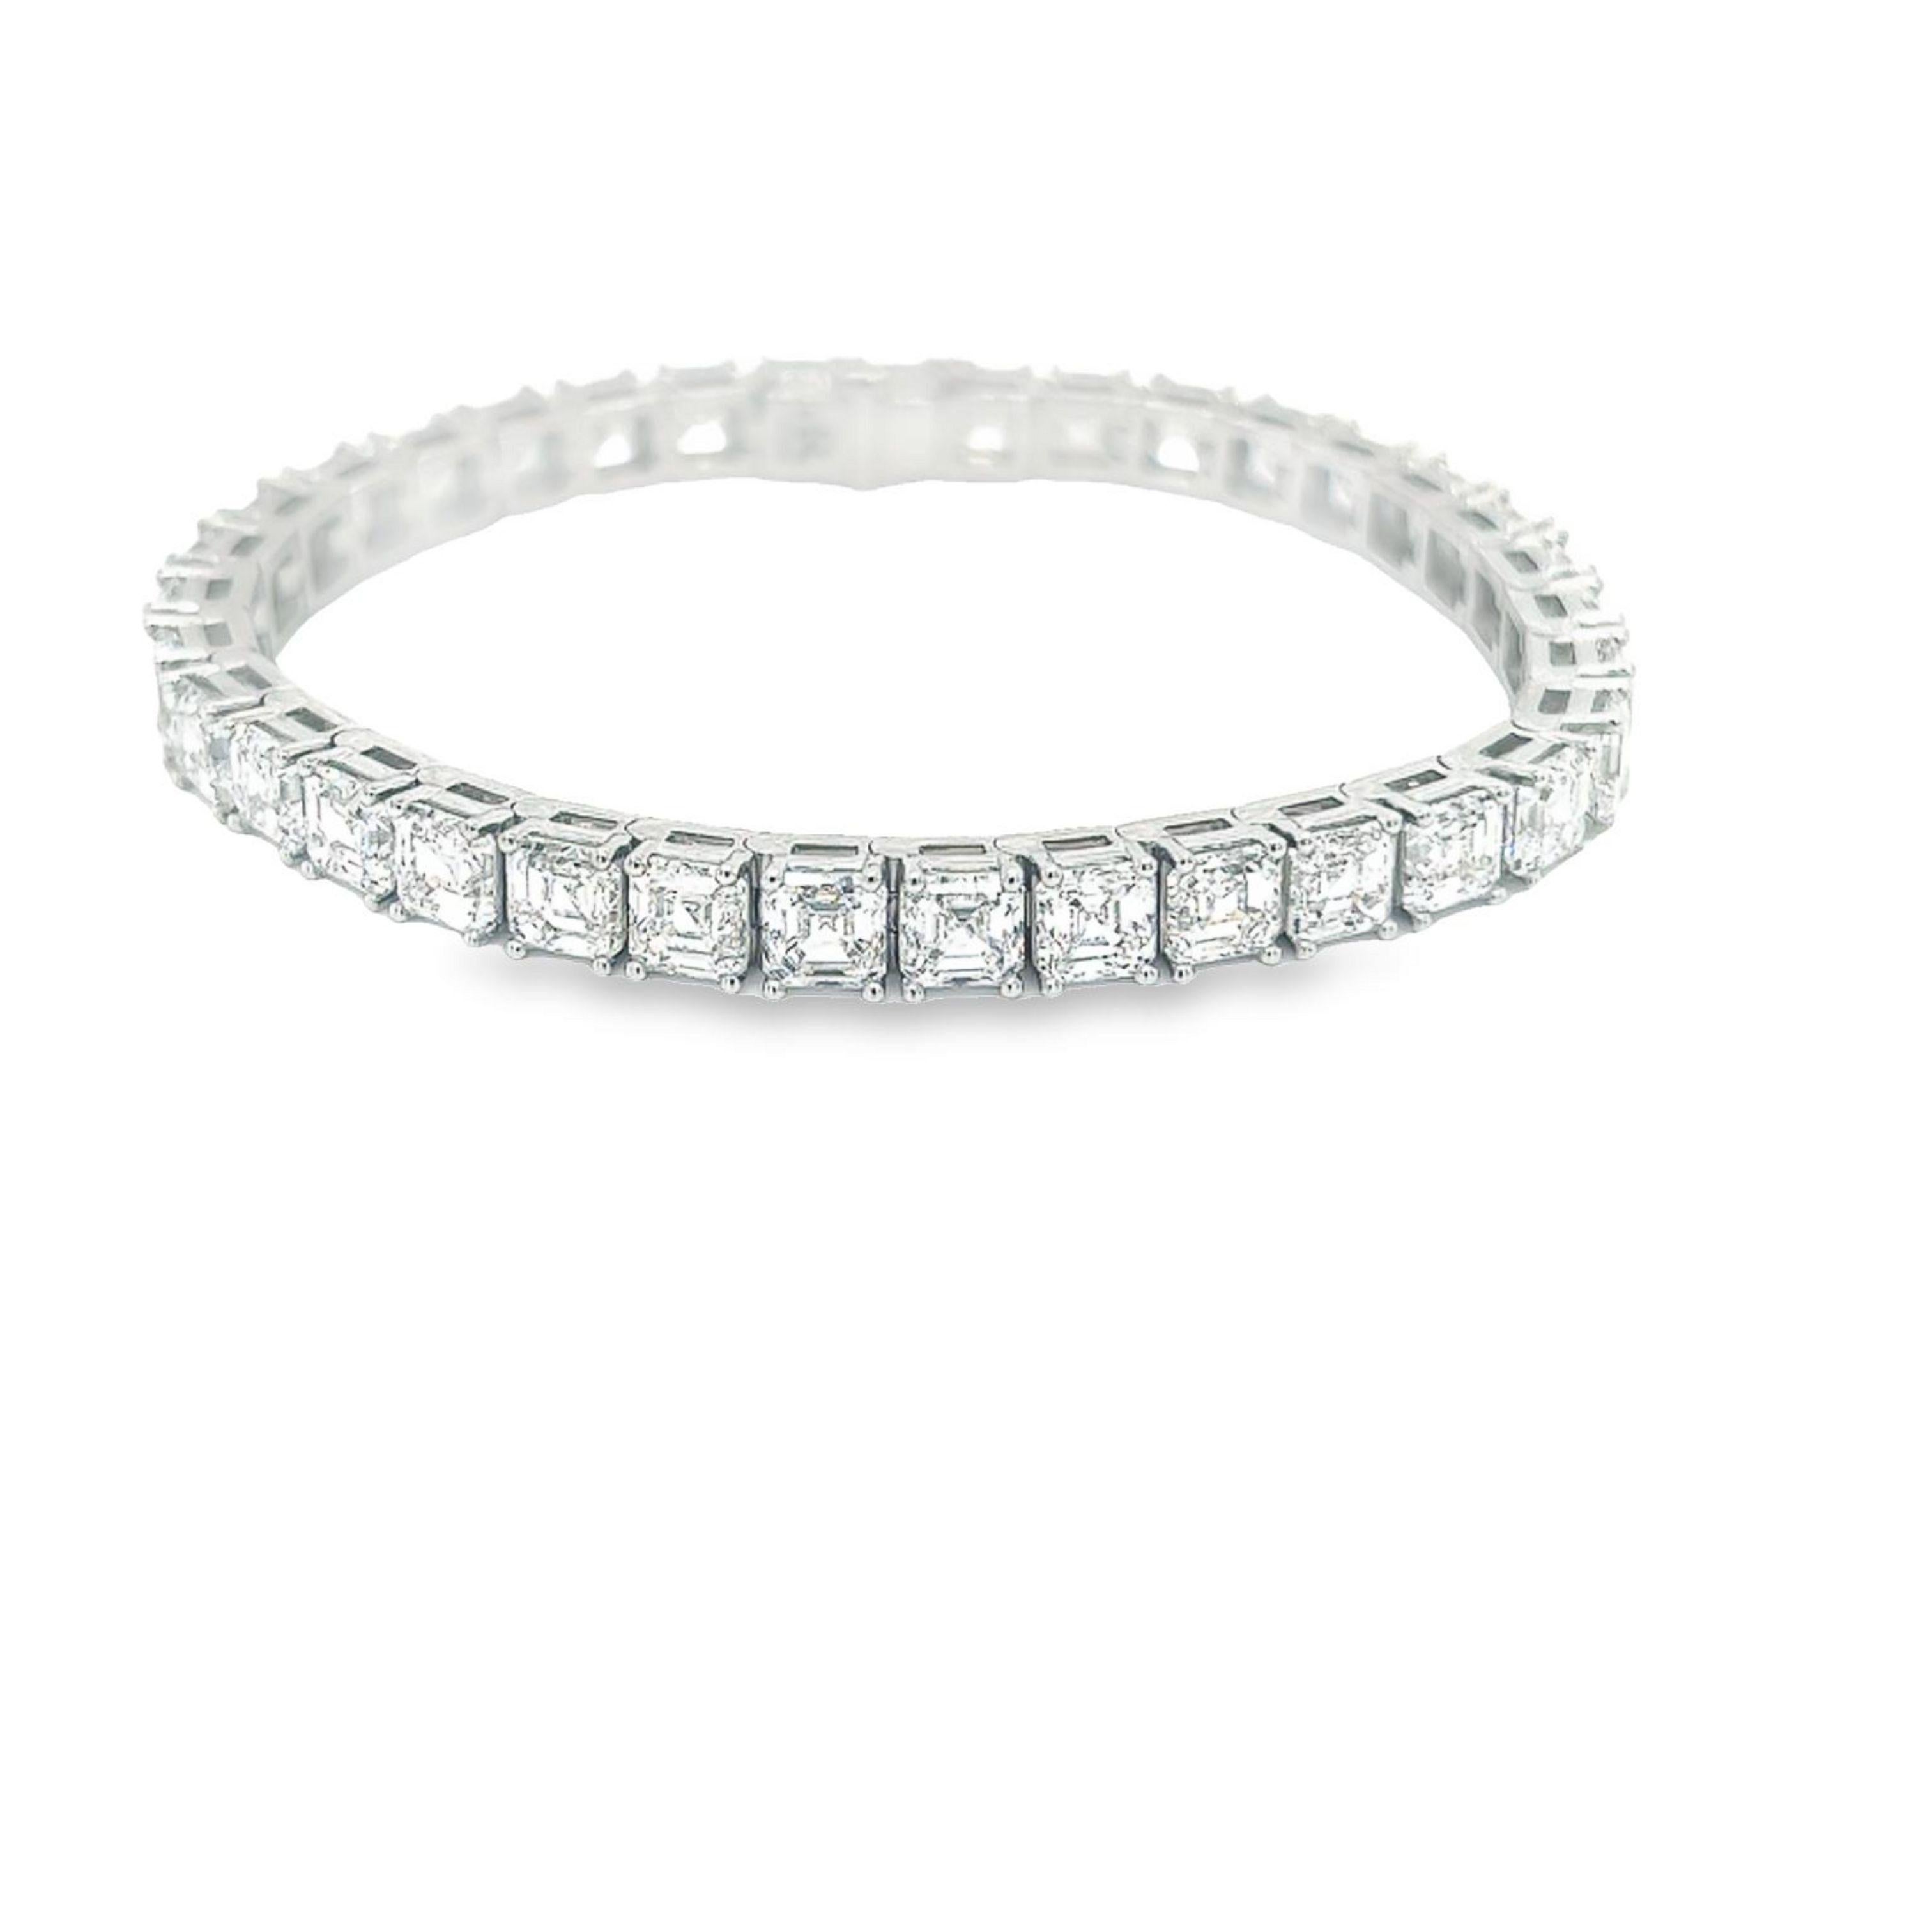 Rosenberg Diamonds and Co. 24,66 Karat Gesamtgewicht Asscher-Schliff 7 Zoll Diamant-Tennis-Armband in Platin gesetzt. Diese schöne gerade Linie Armband besteht aus .70 Karat, D-F in Farbe VS2-IF in Klarheit. Alle 35 Steine sind perfekt aufeinander